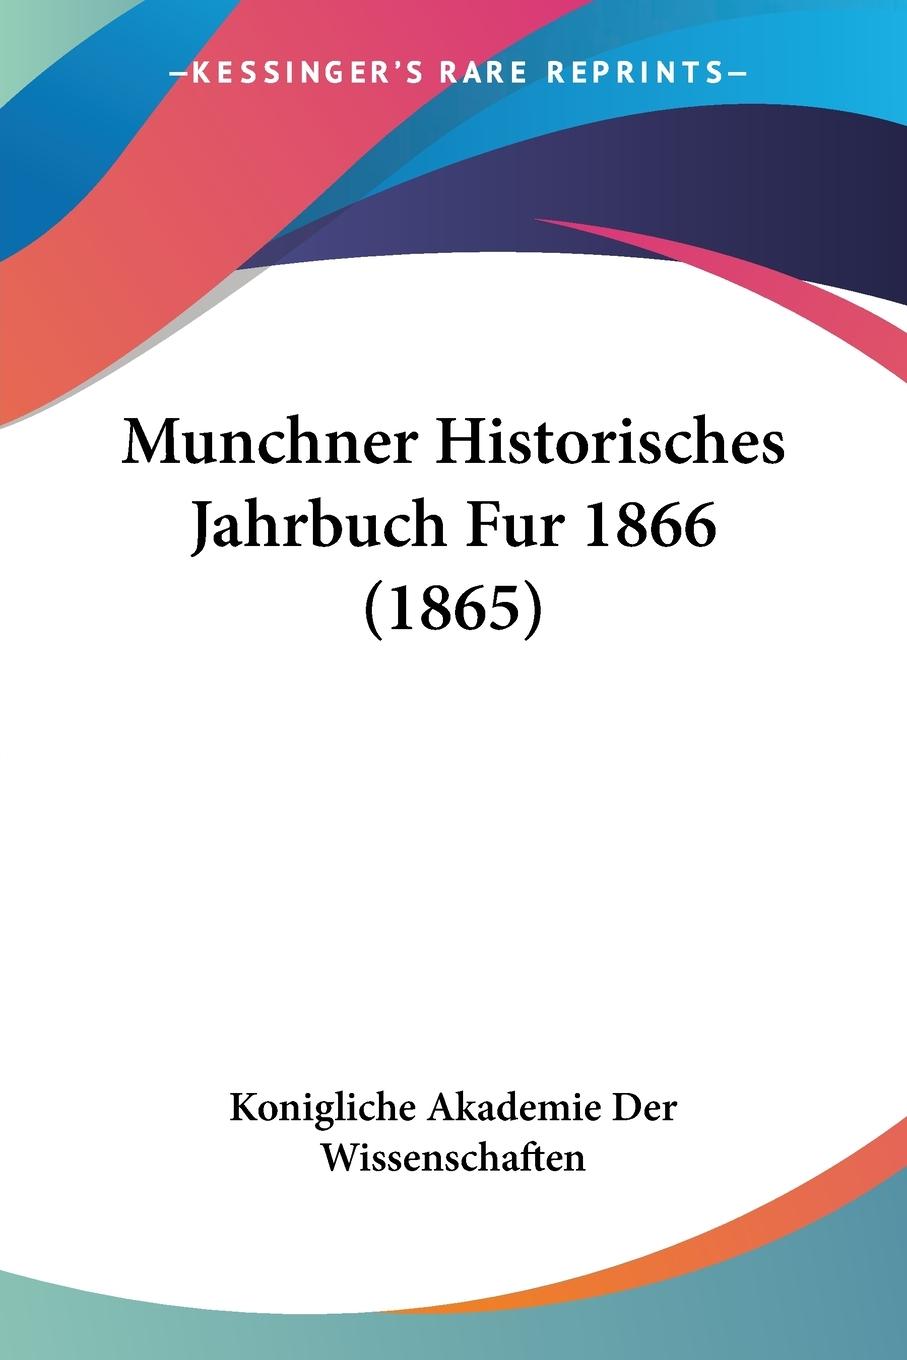 Munchner Historisches Jahrbuch Fur 1866 (1865) - Konigliche Akademie Der Wissenschaften